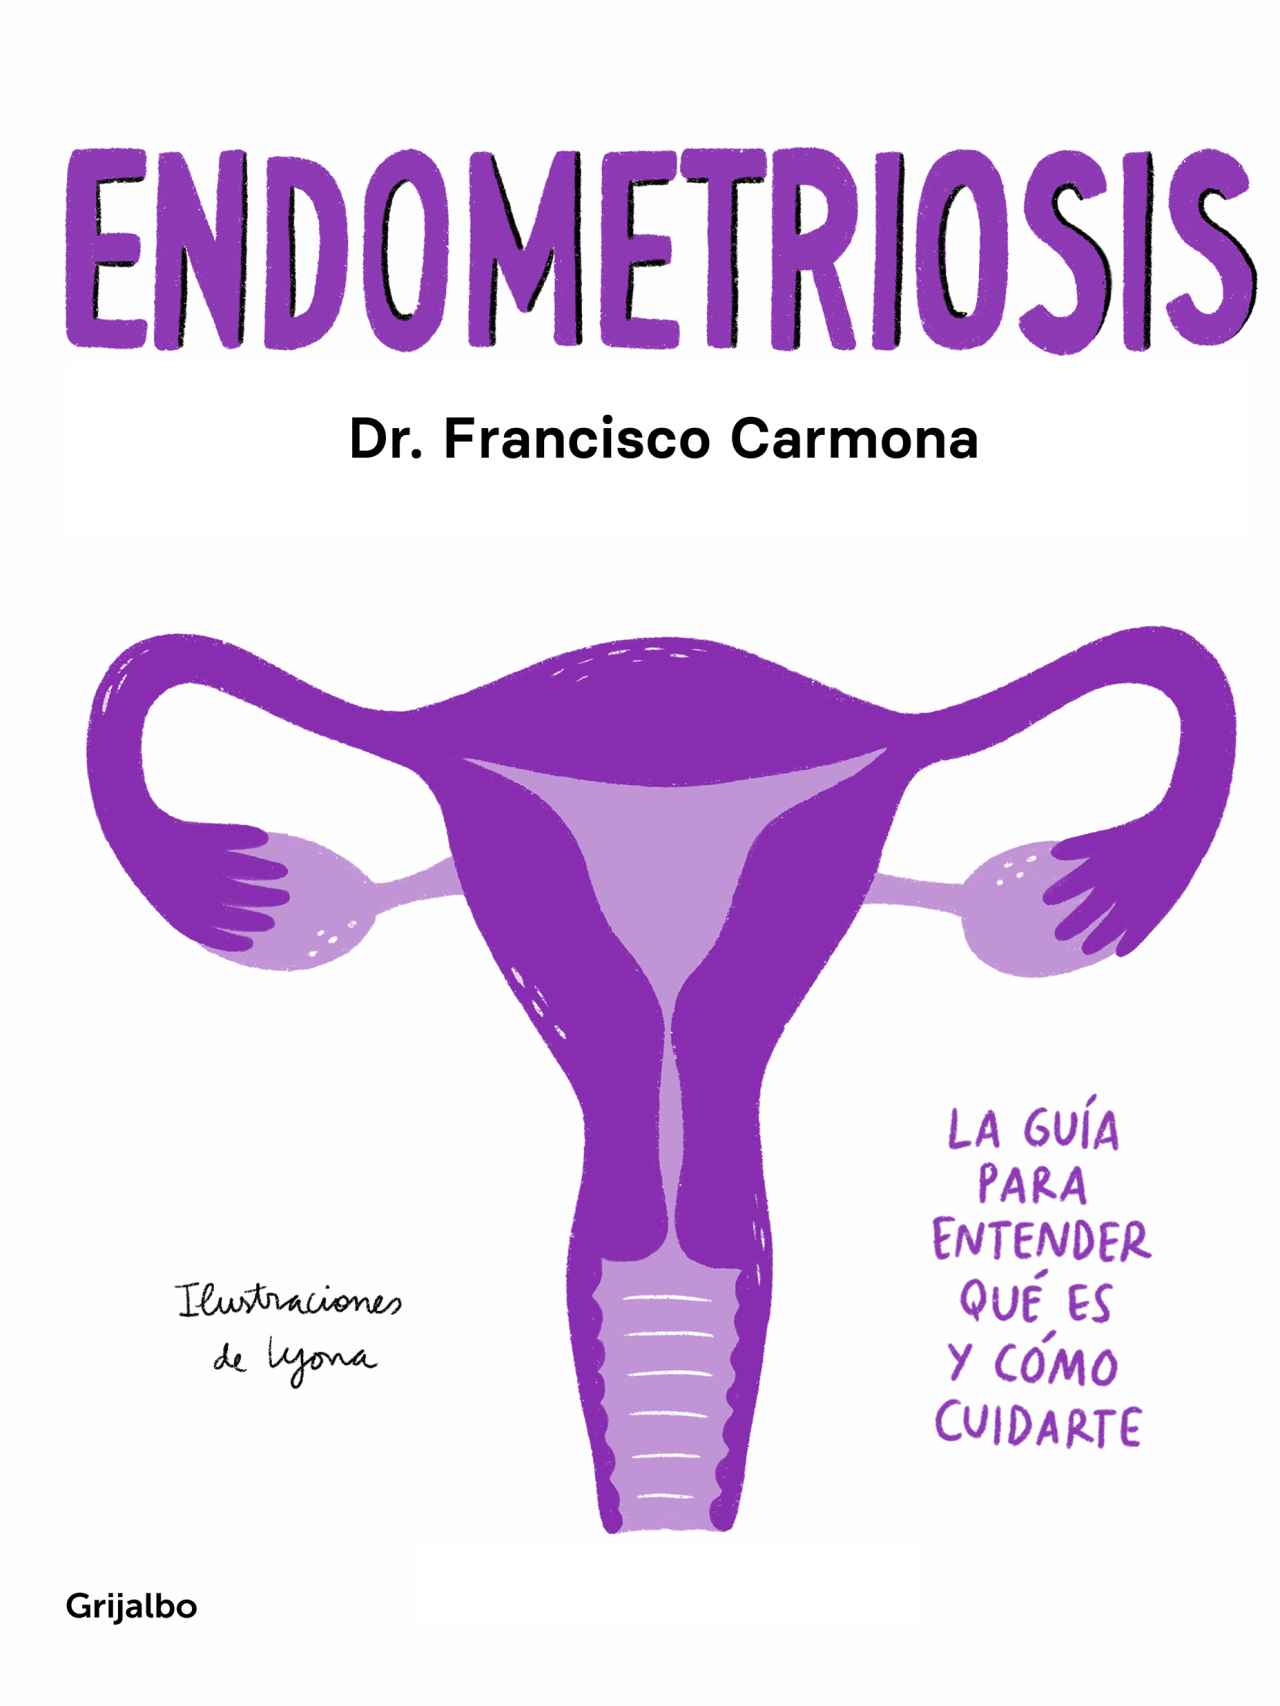 Portada del libro 'Endometriosis'.